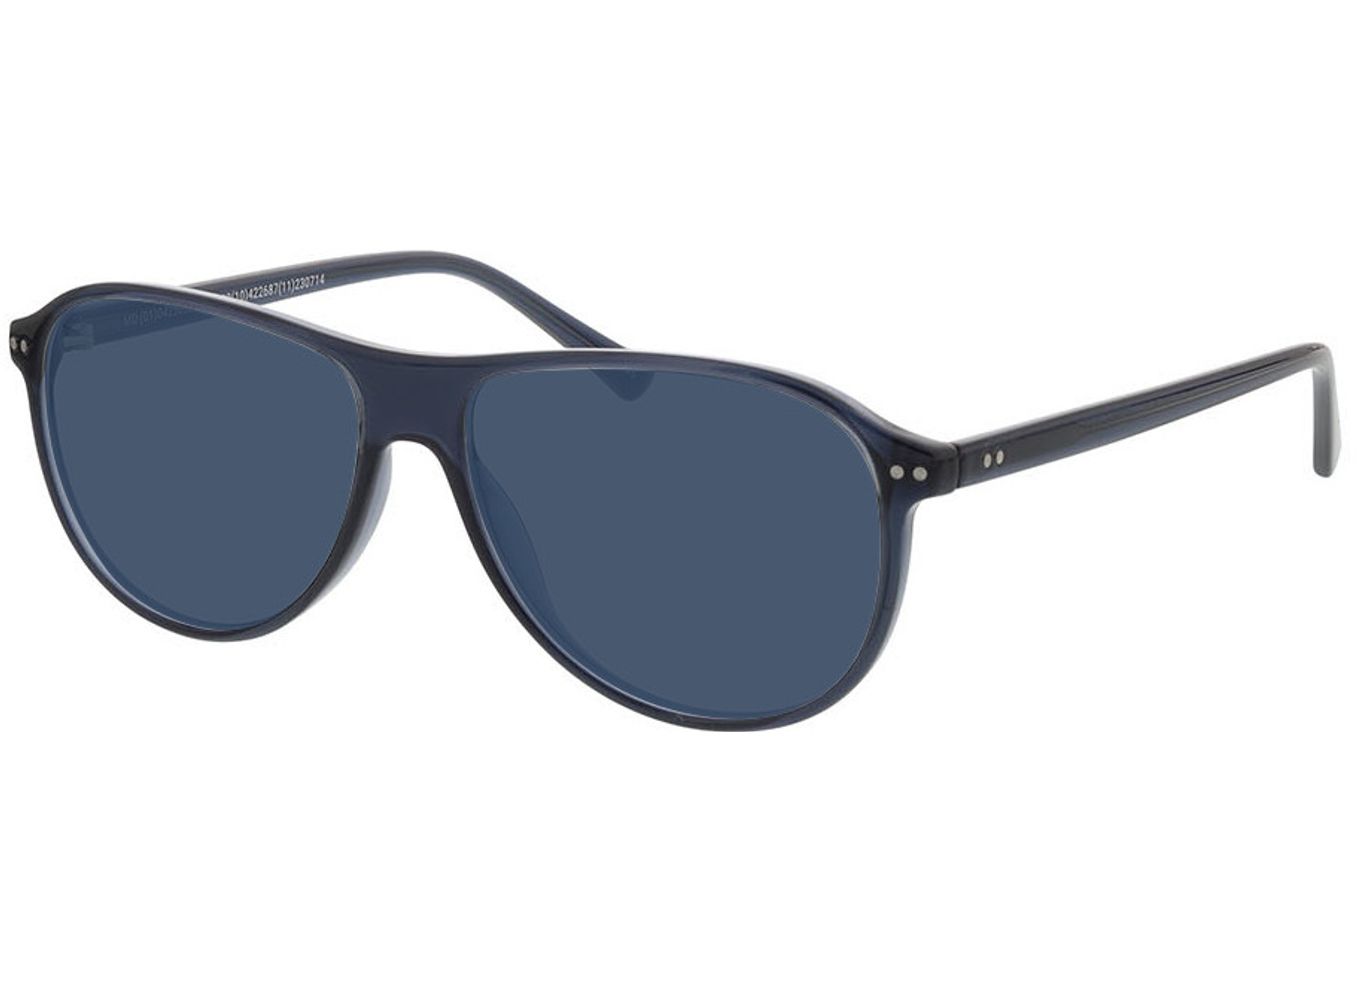 Dallas - blau Sonnenbrille ohne Sehstärke, Vollrand, Pilot von Brille24 Collection